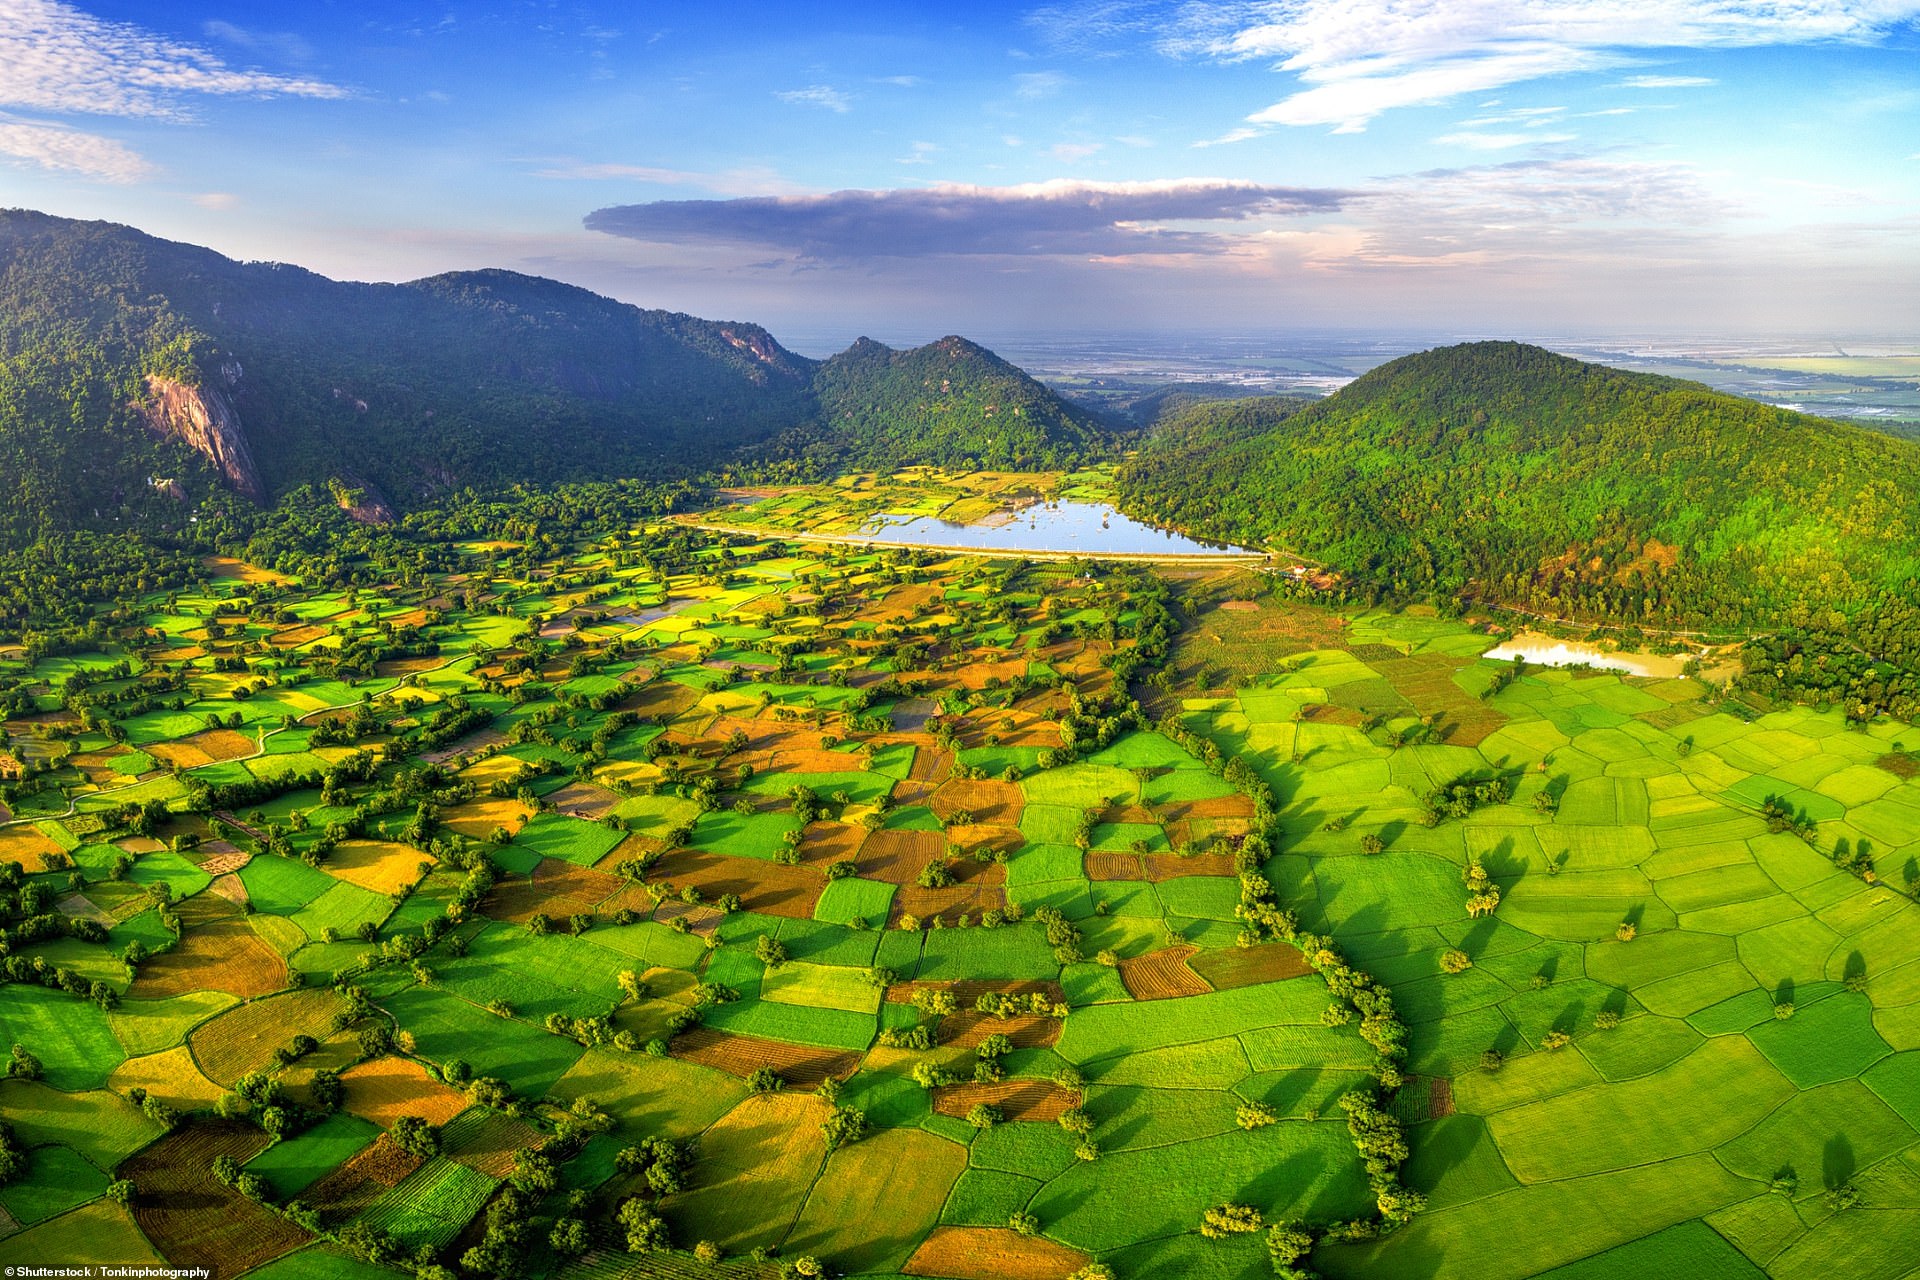 Còn đây là những bức ảnh cánh đồng lúa ở Đồng bằng Sông Cửu Long, giống như một tấm chăn chắp vá.